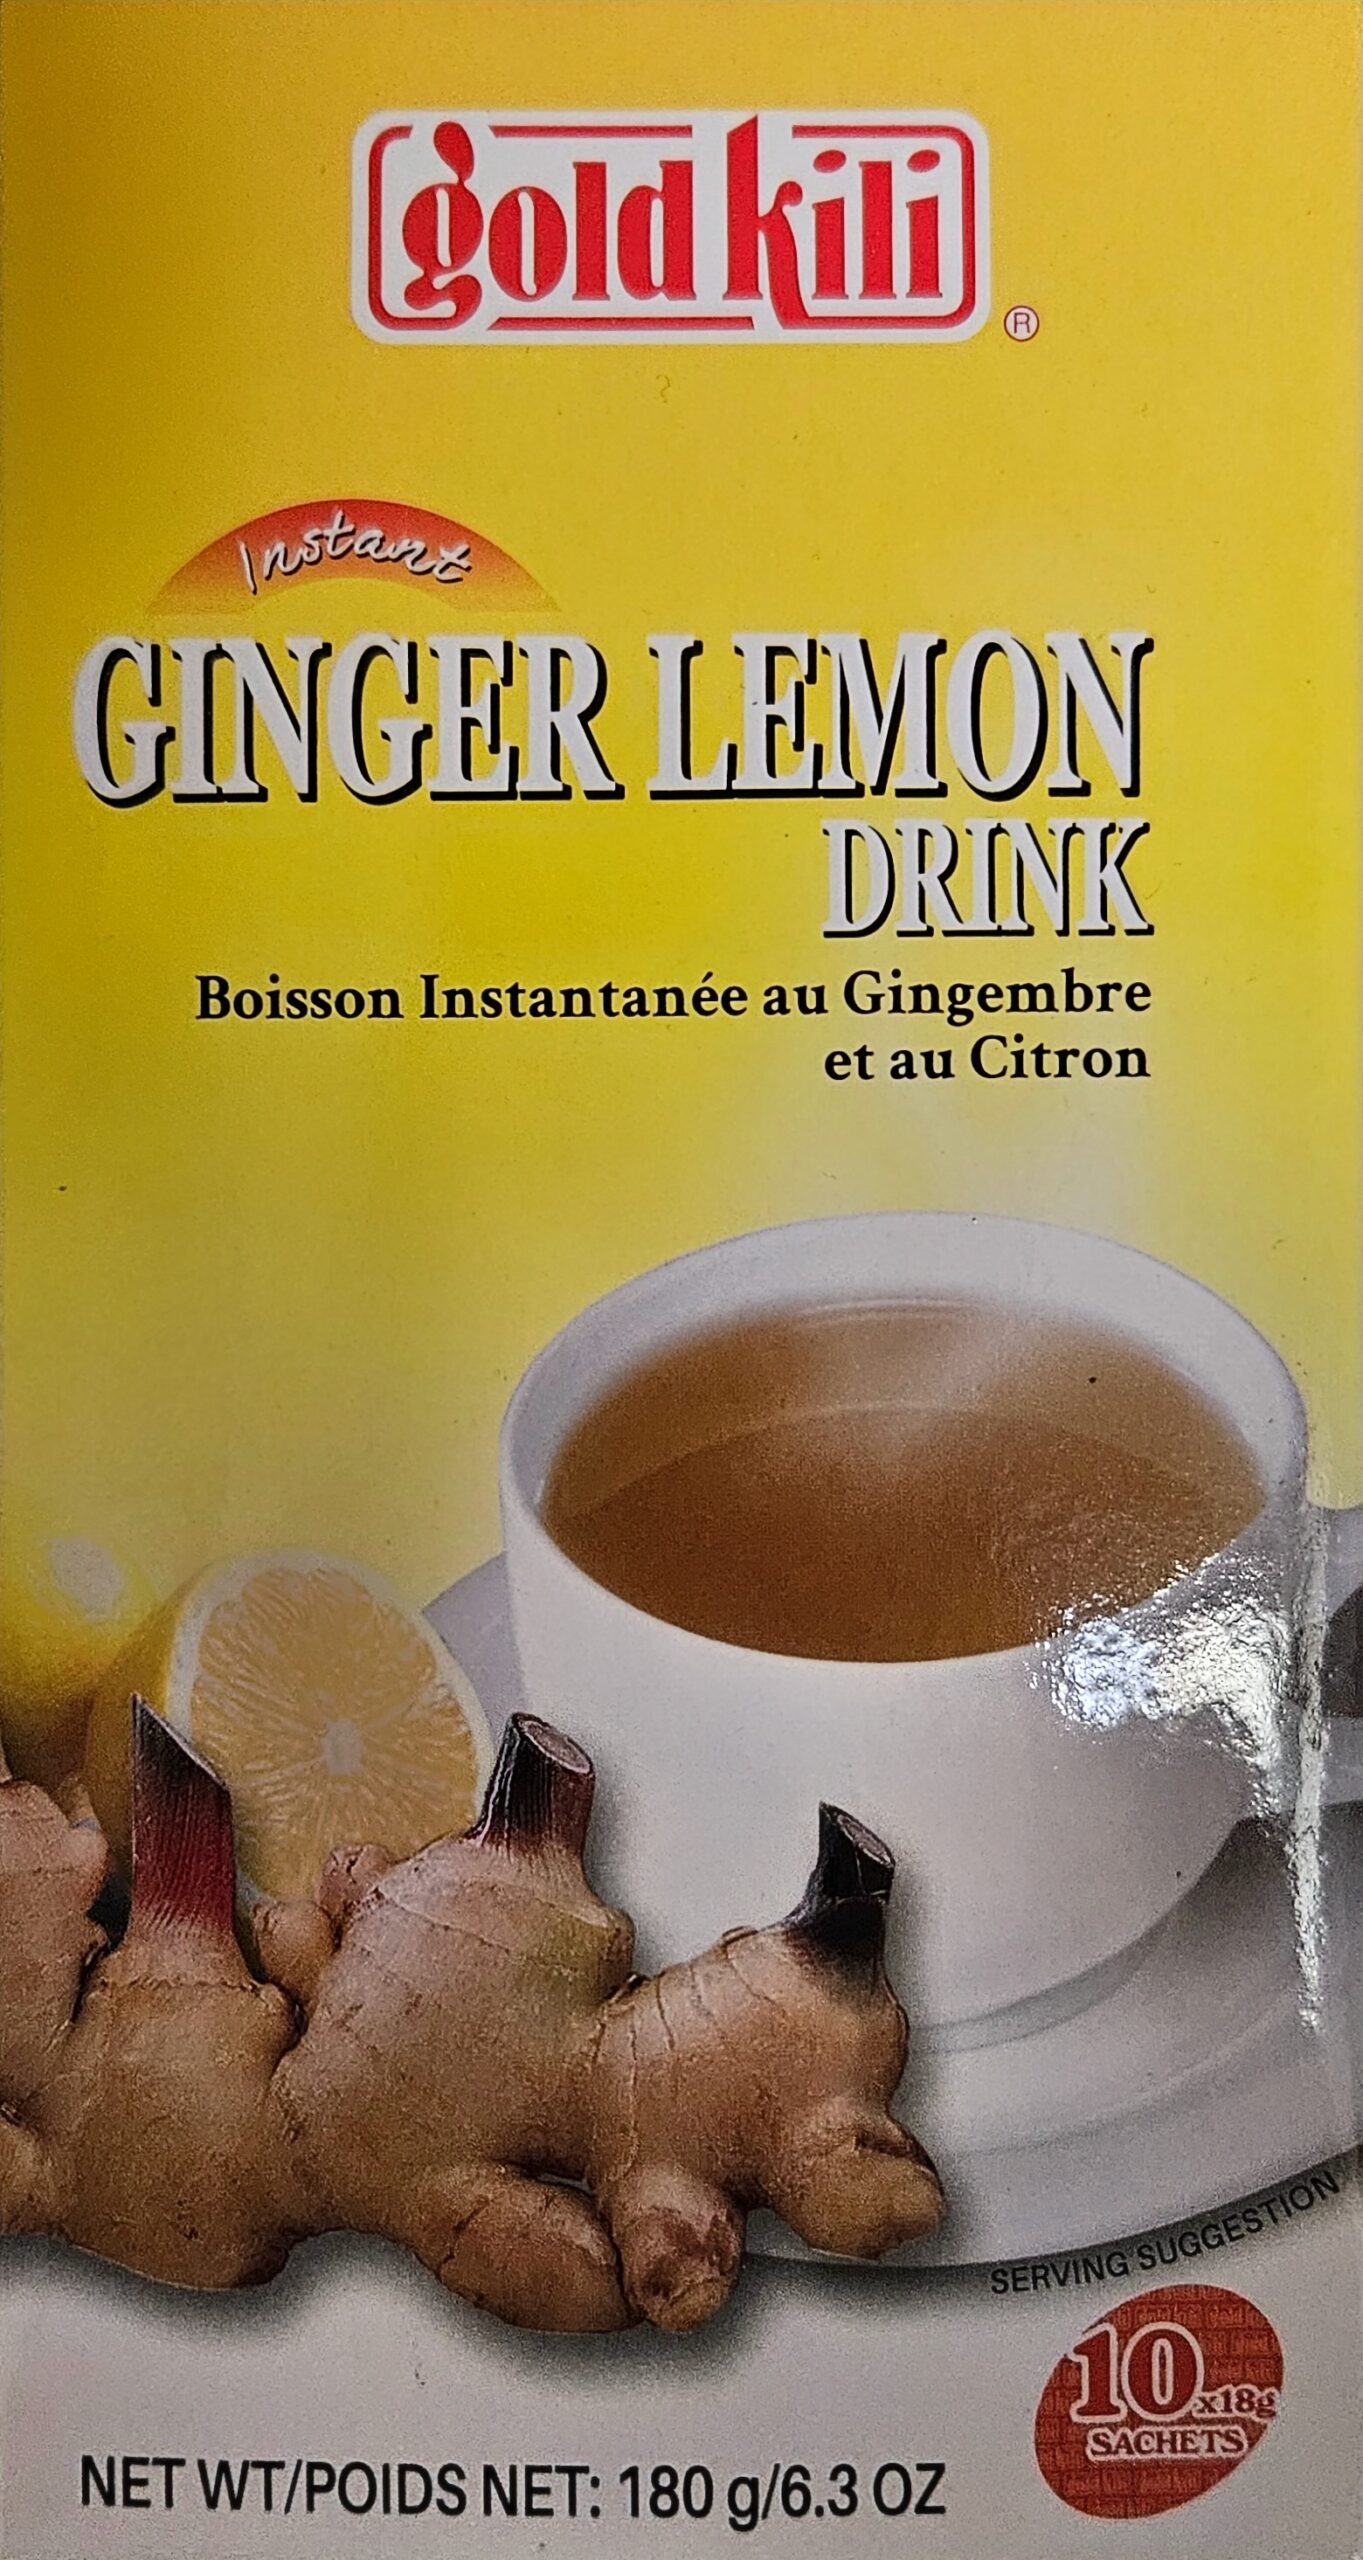 Gold kili ginger lemon drink – boisson instantanée au gingembre et citron – 10x18g – 180g